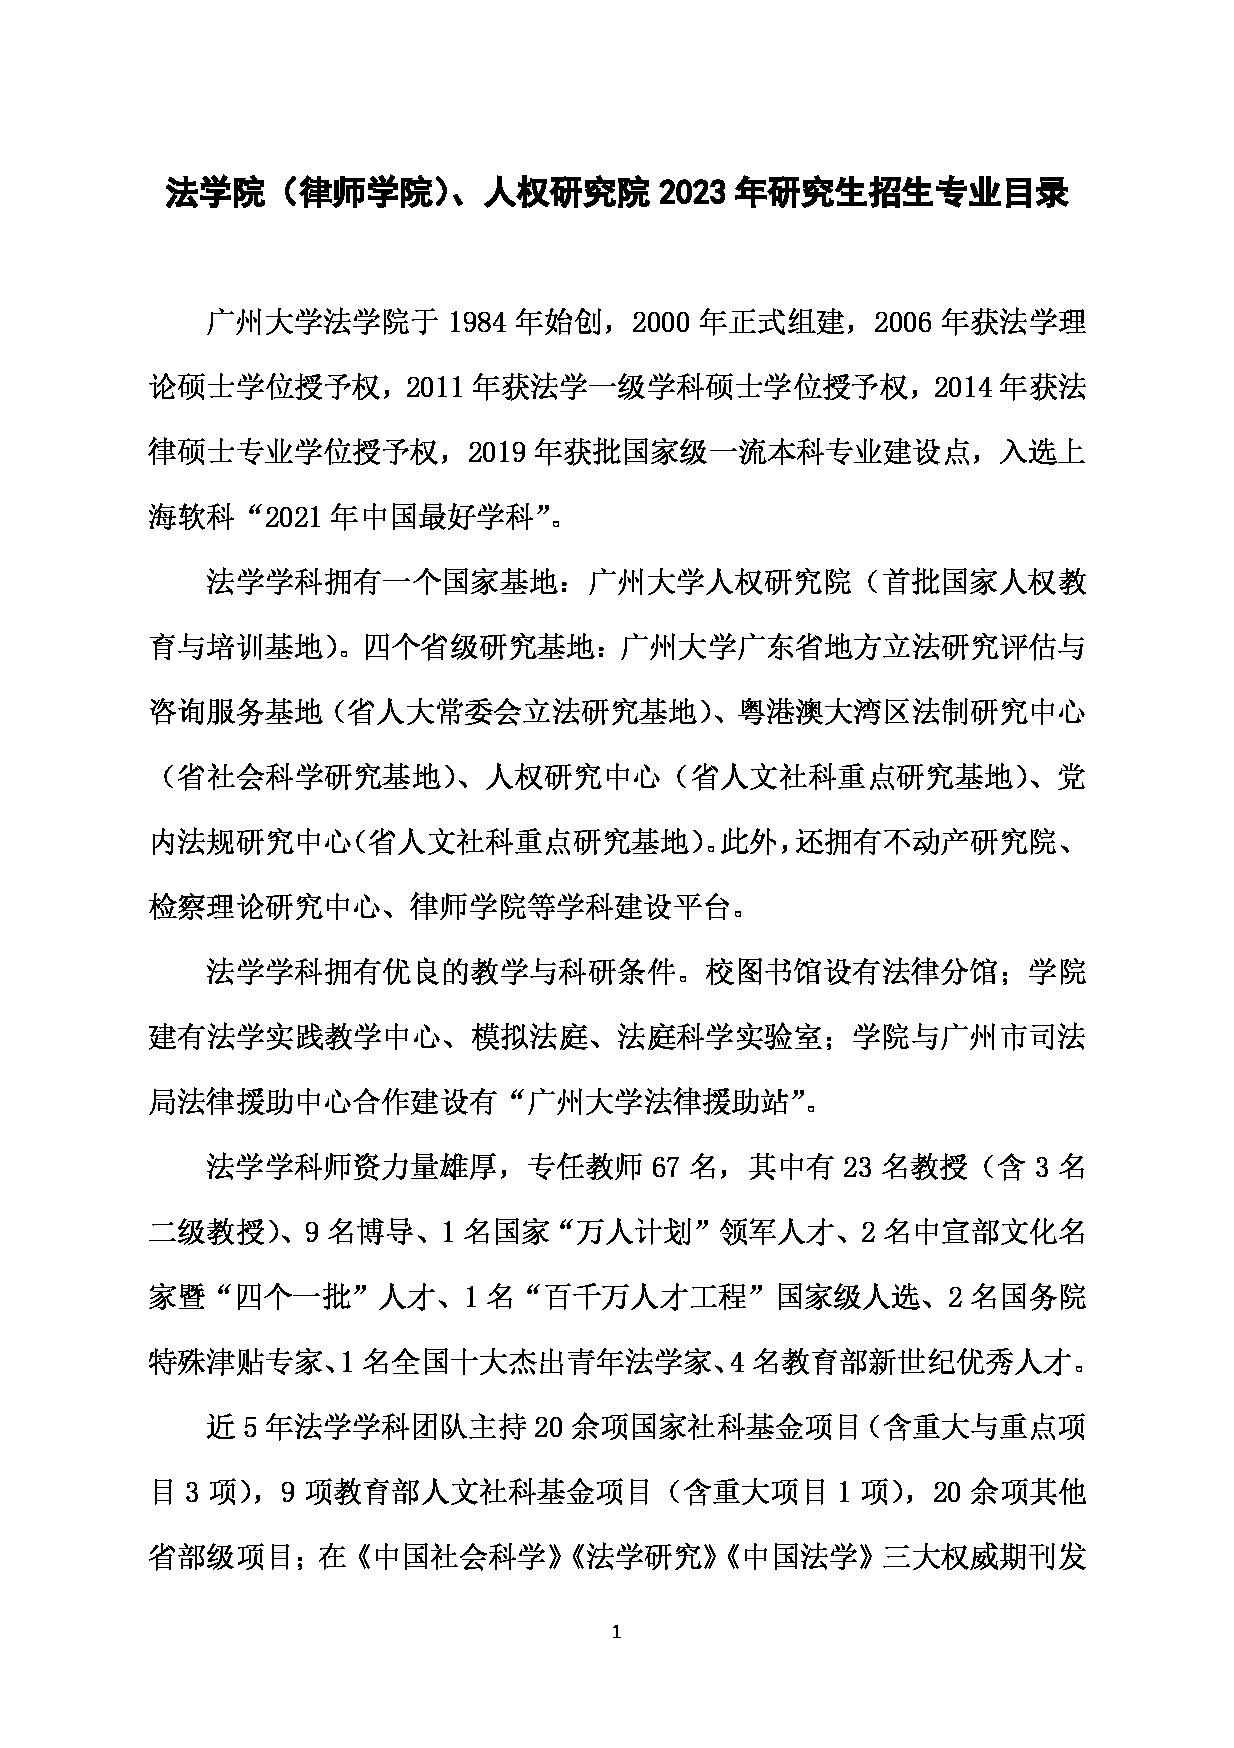 2023招生目录：广州大学2023年  2法学院 研究生考试招生目录第1页